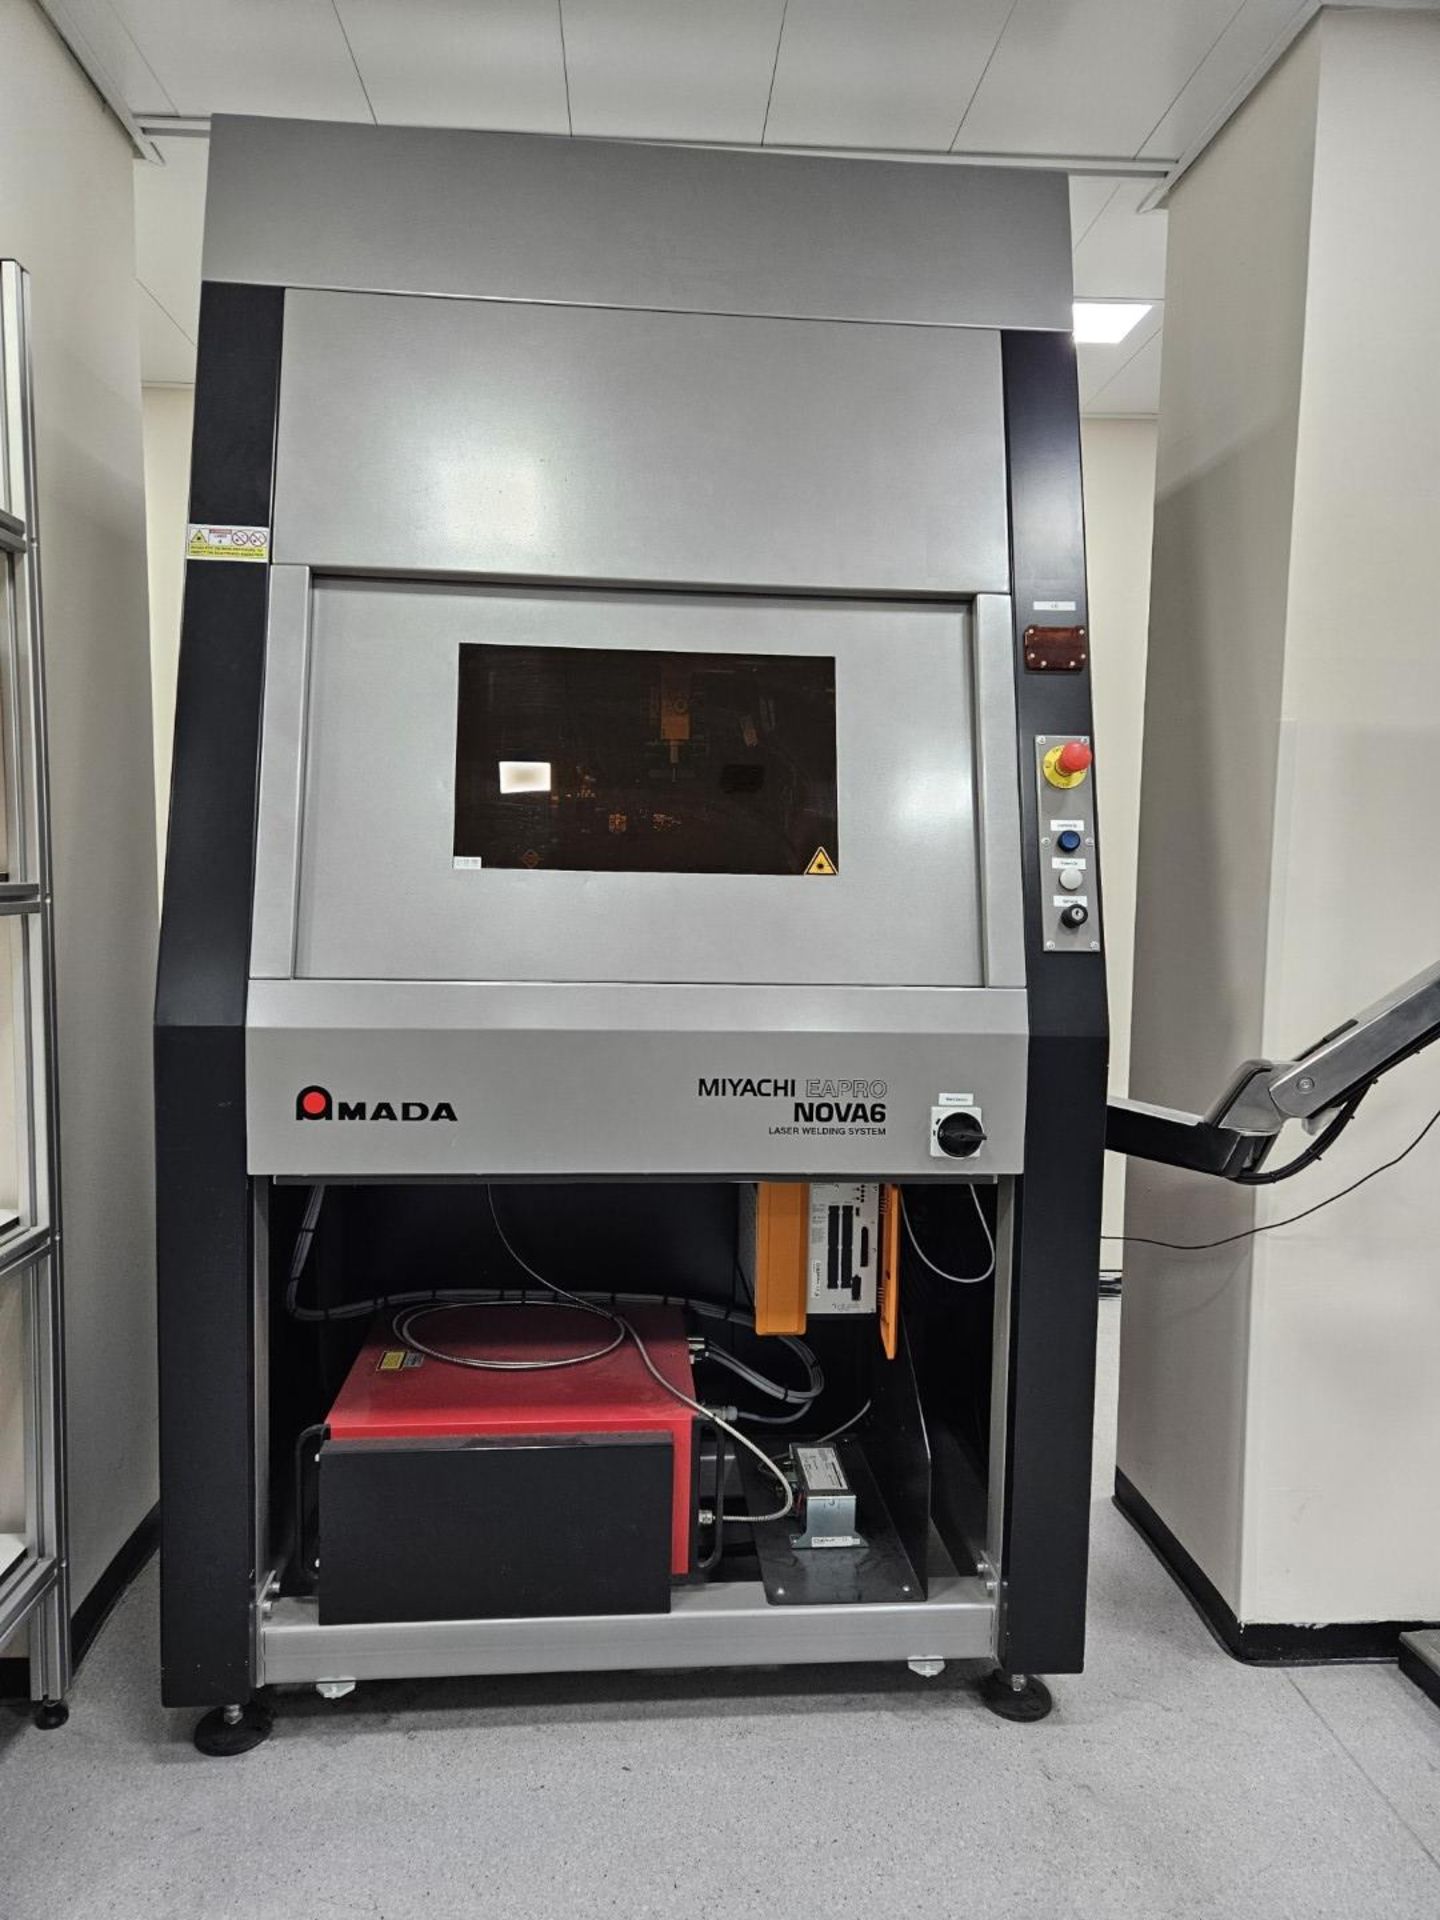 1 x Amada Miyachi Nova 6 Laser CNC Welding Workstation System - Type: 68M0098 - Year: 2016 - Image 13 of 20